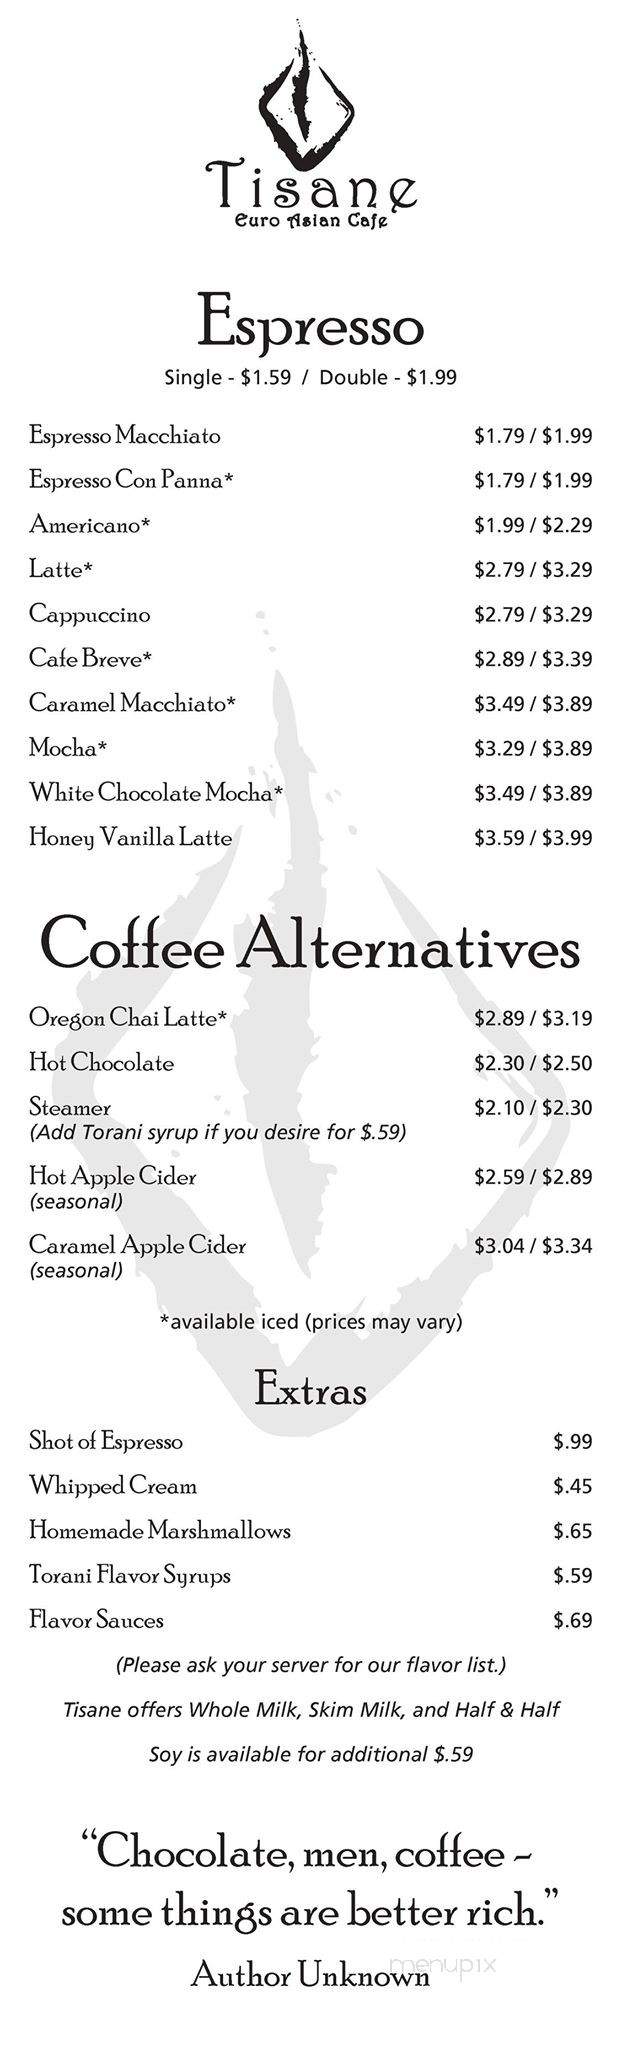 Tisane Tea & Coffee Bar - Hartford, CT